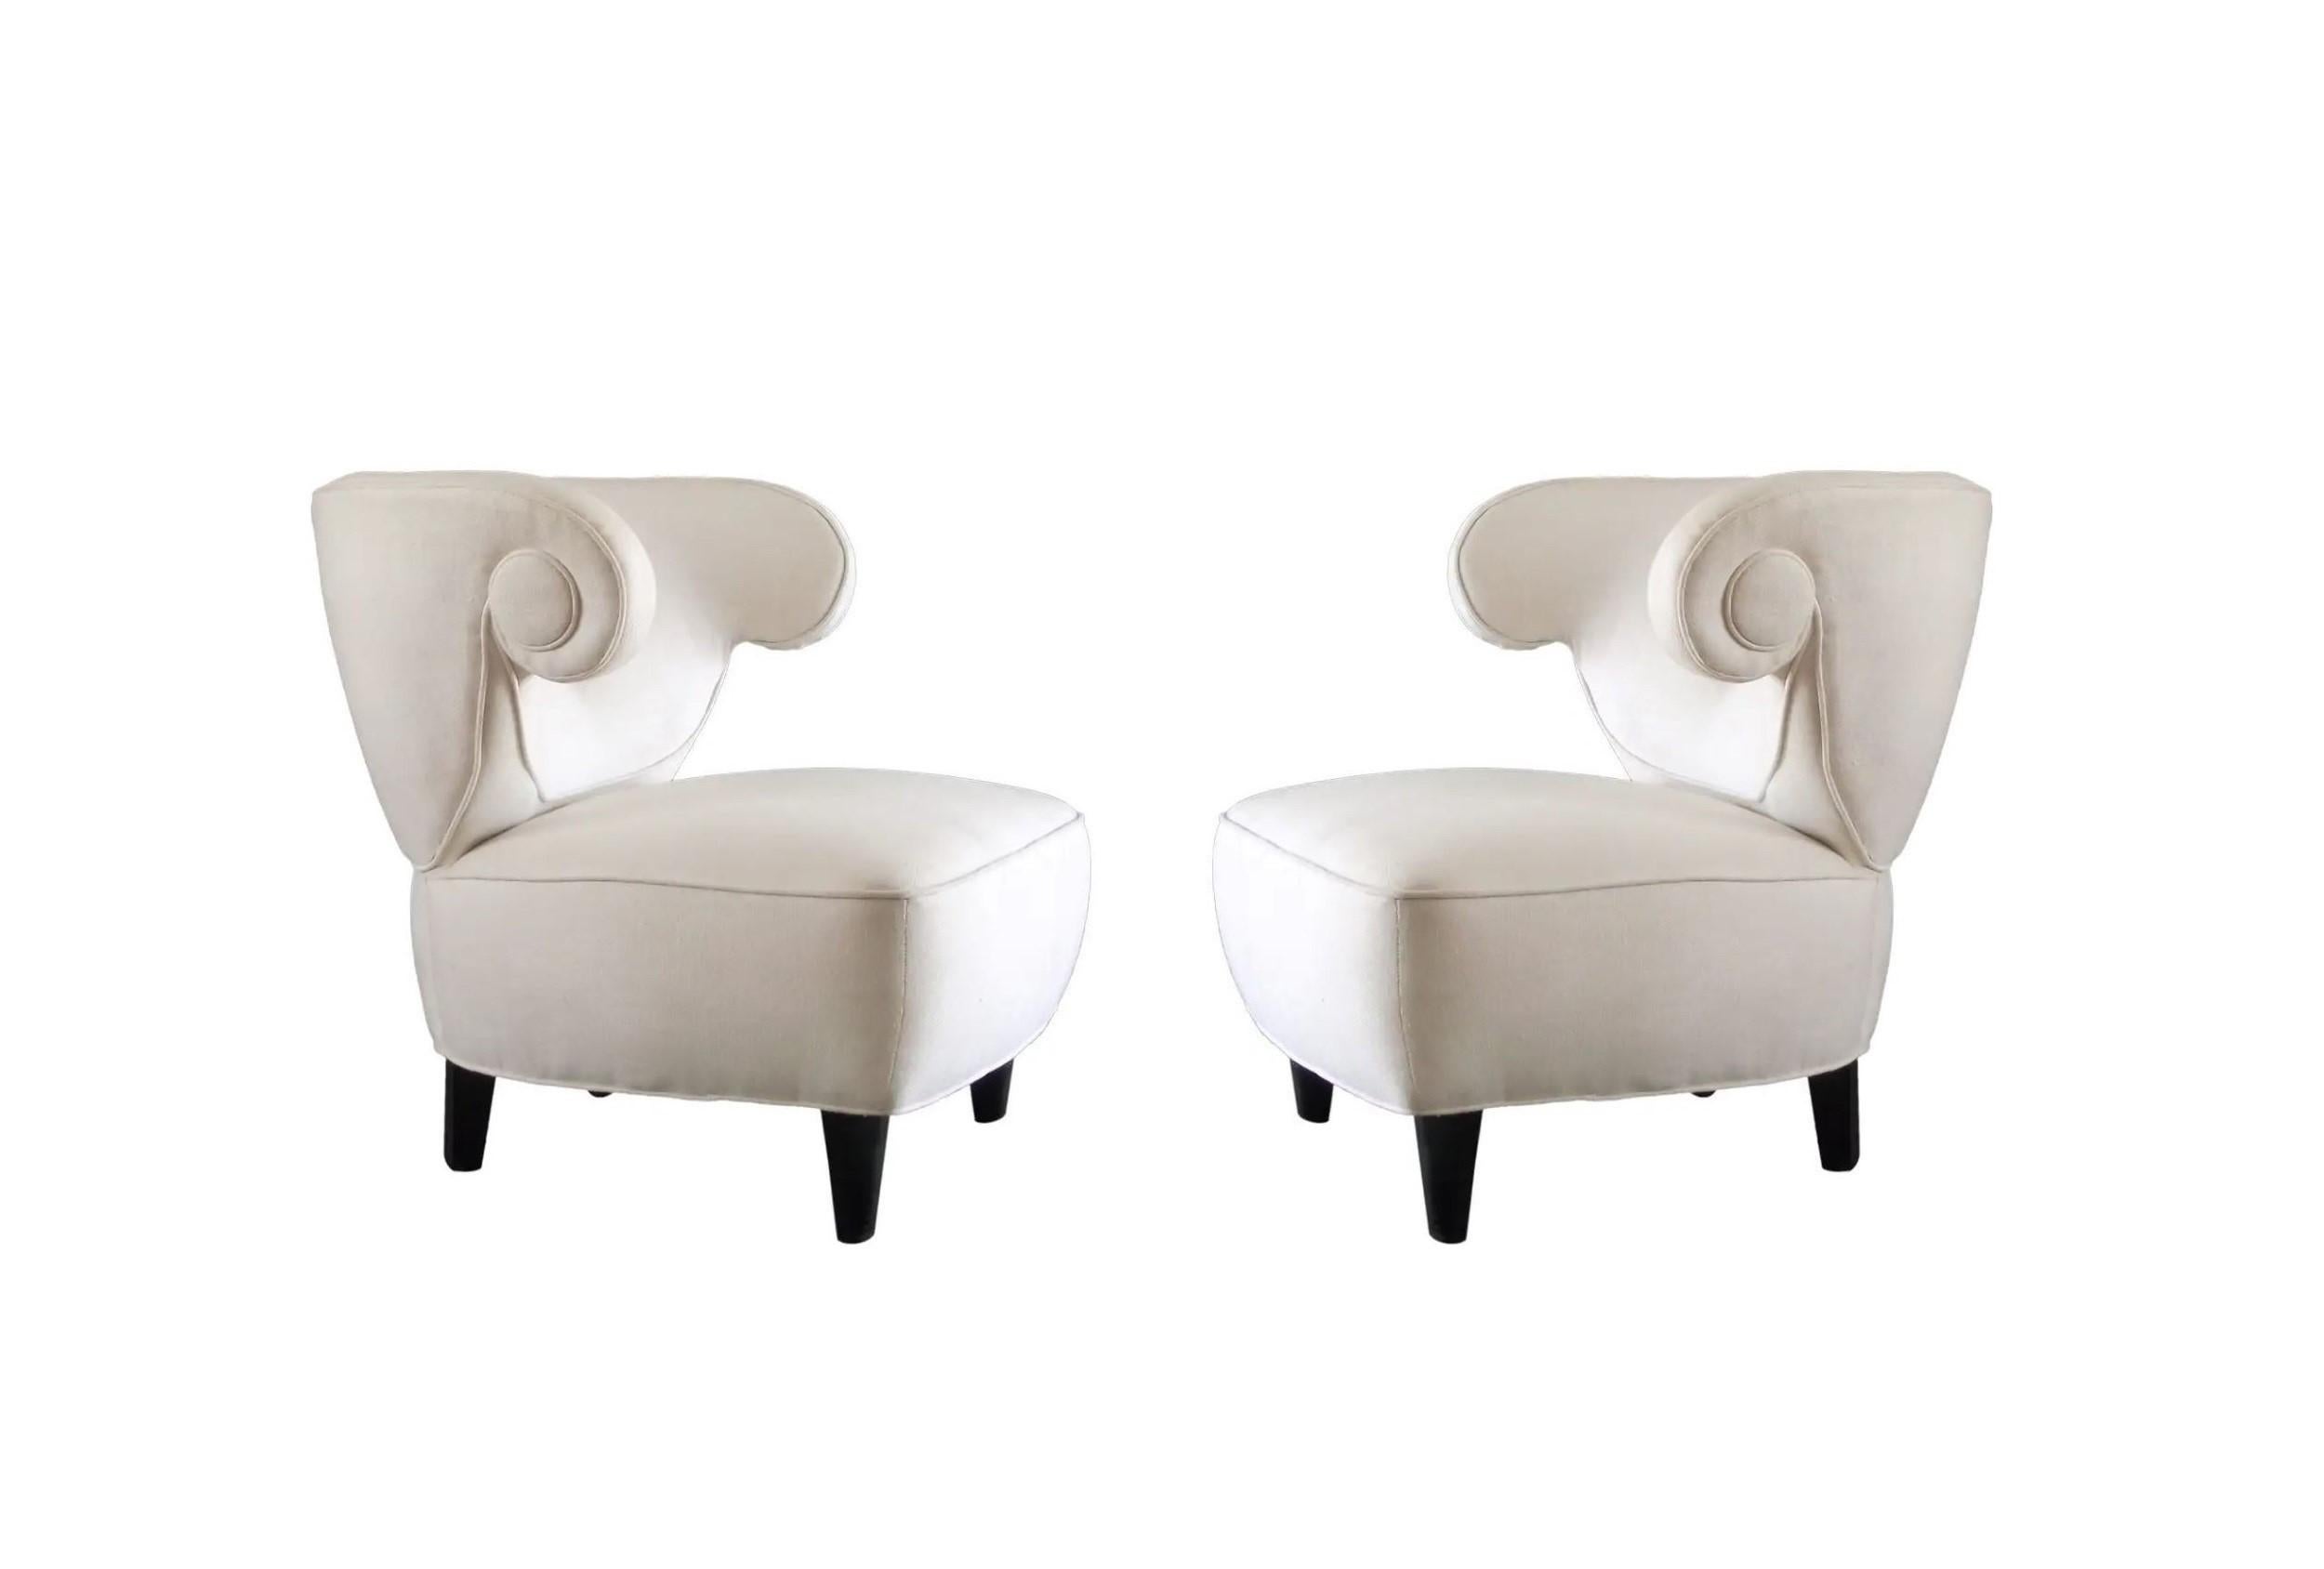 Paire de chaises pantoufles extrêmement spectaculaires conçues par Paul Laszlo, qui respirent sans aucun doute la fin de la période Art déco des années 1940. Généreusement proportionnée, chaque chaise incarne la définition même de l'opulence et de